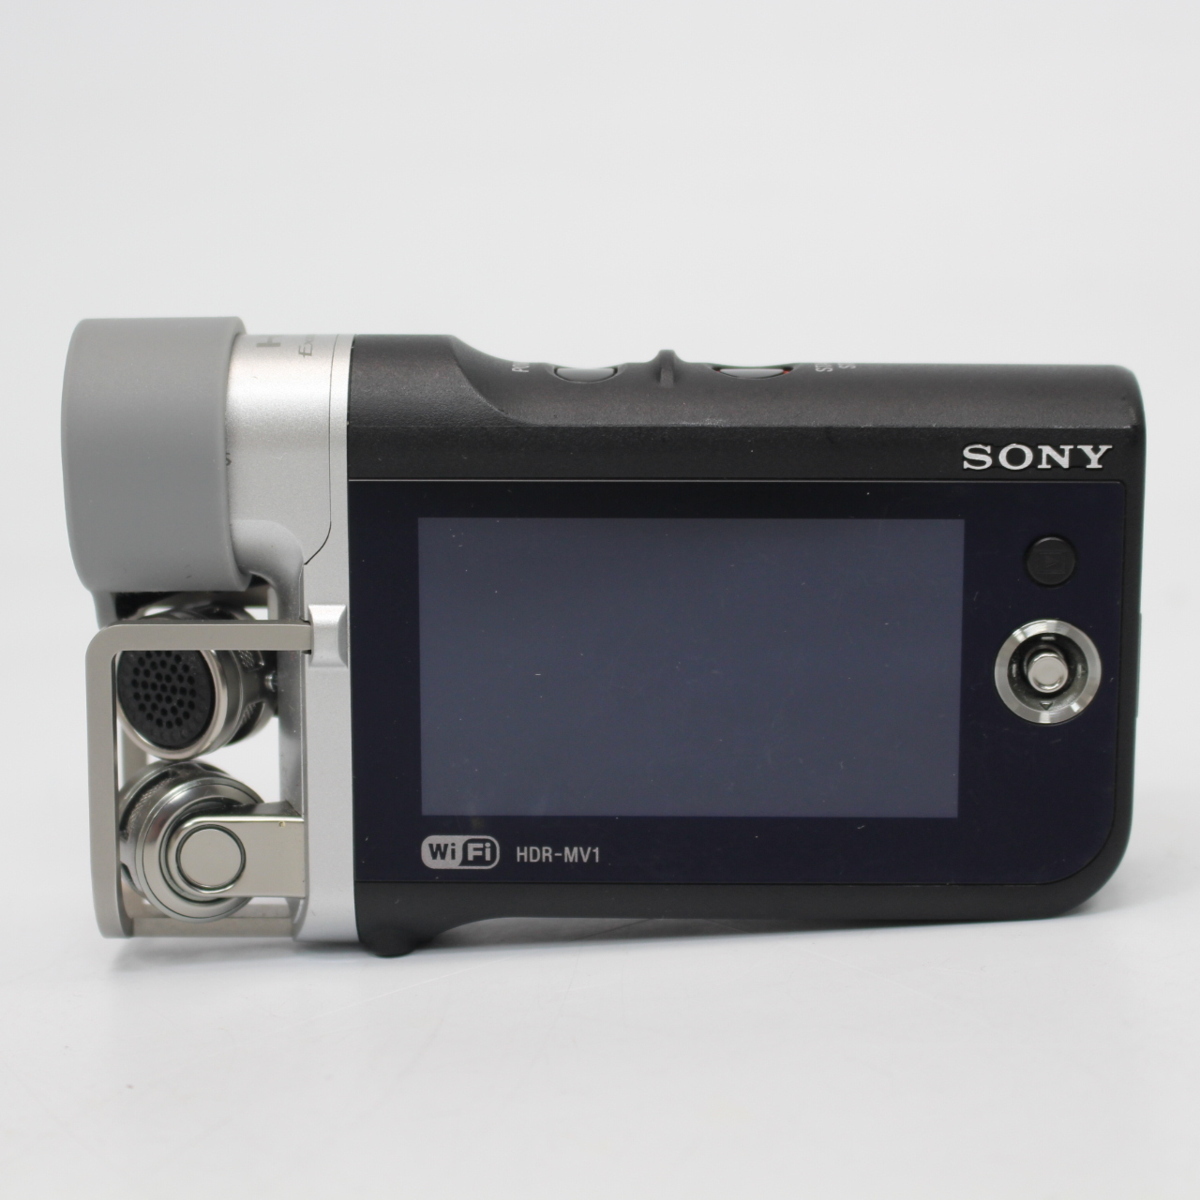 東京都渋谷区にて ソニー デジタルビデオカメラ HDR-MV1 2013年製 を出張買取させて頂きました。